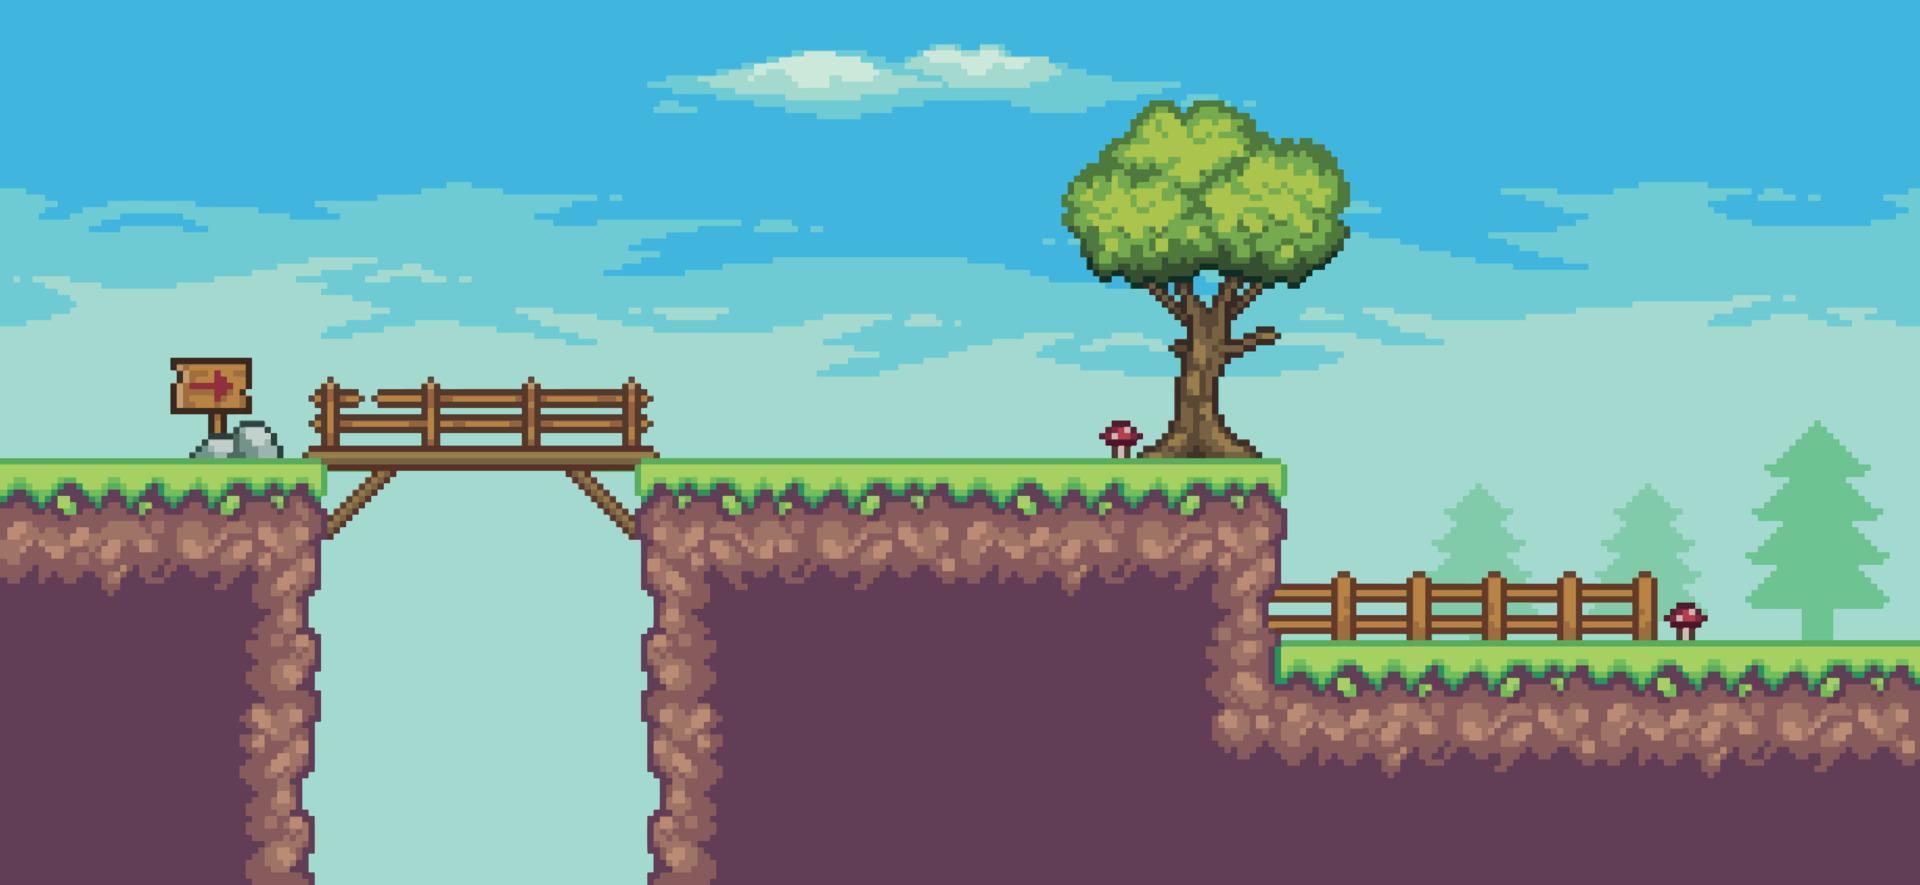 escena de juego de arcade de arte de píxeles con árbol, puente, cerca, tabla de madera y fondo de vector de nubes de 8 bits